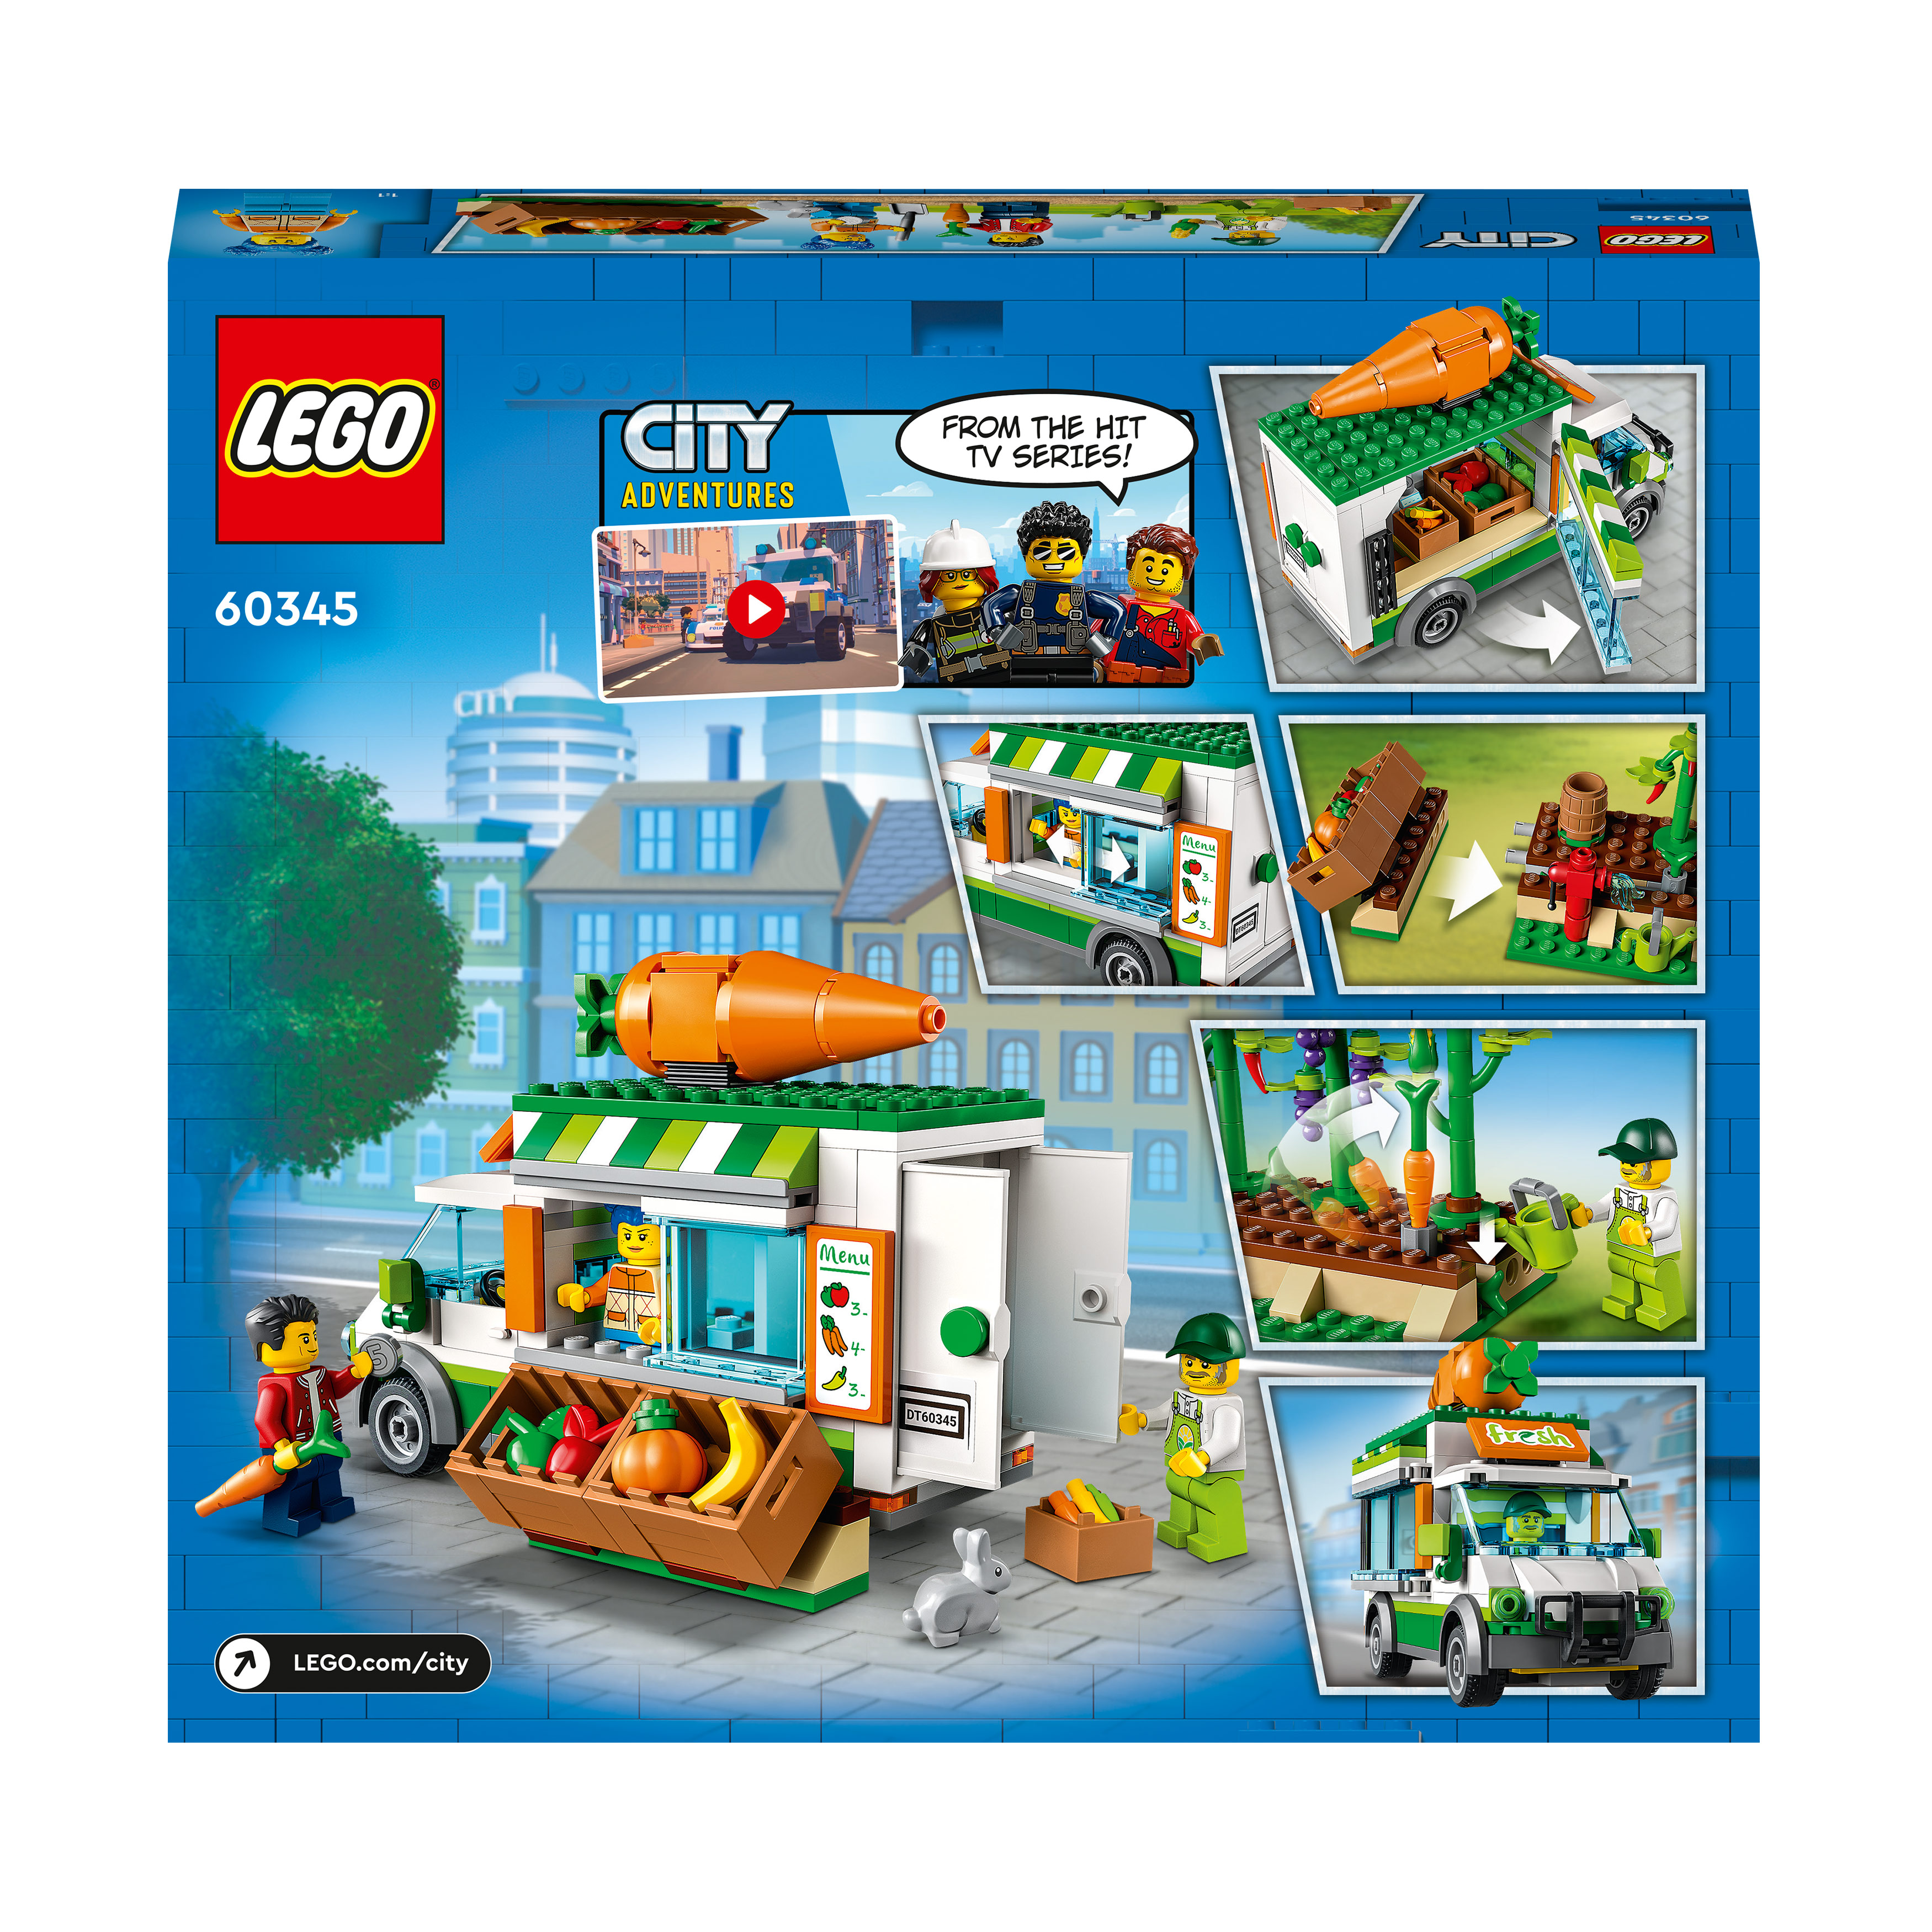 LEGO City 60345 Gemüse-Lieferwagen Bausatz, Mehrfarbig